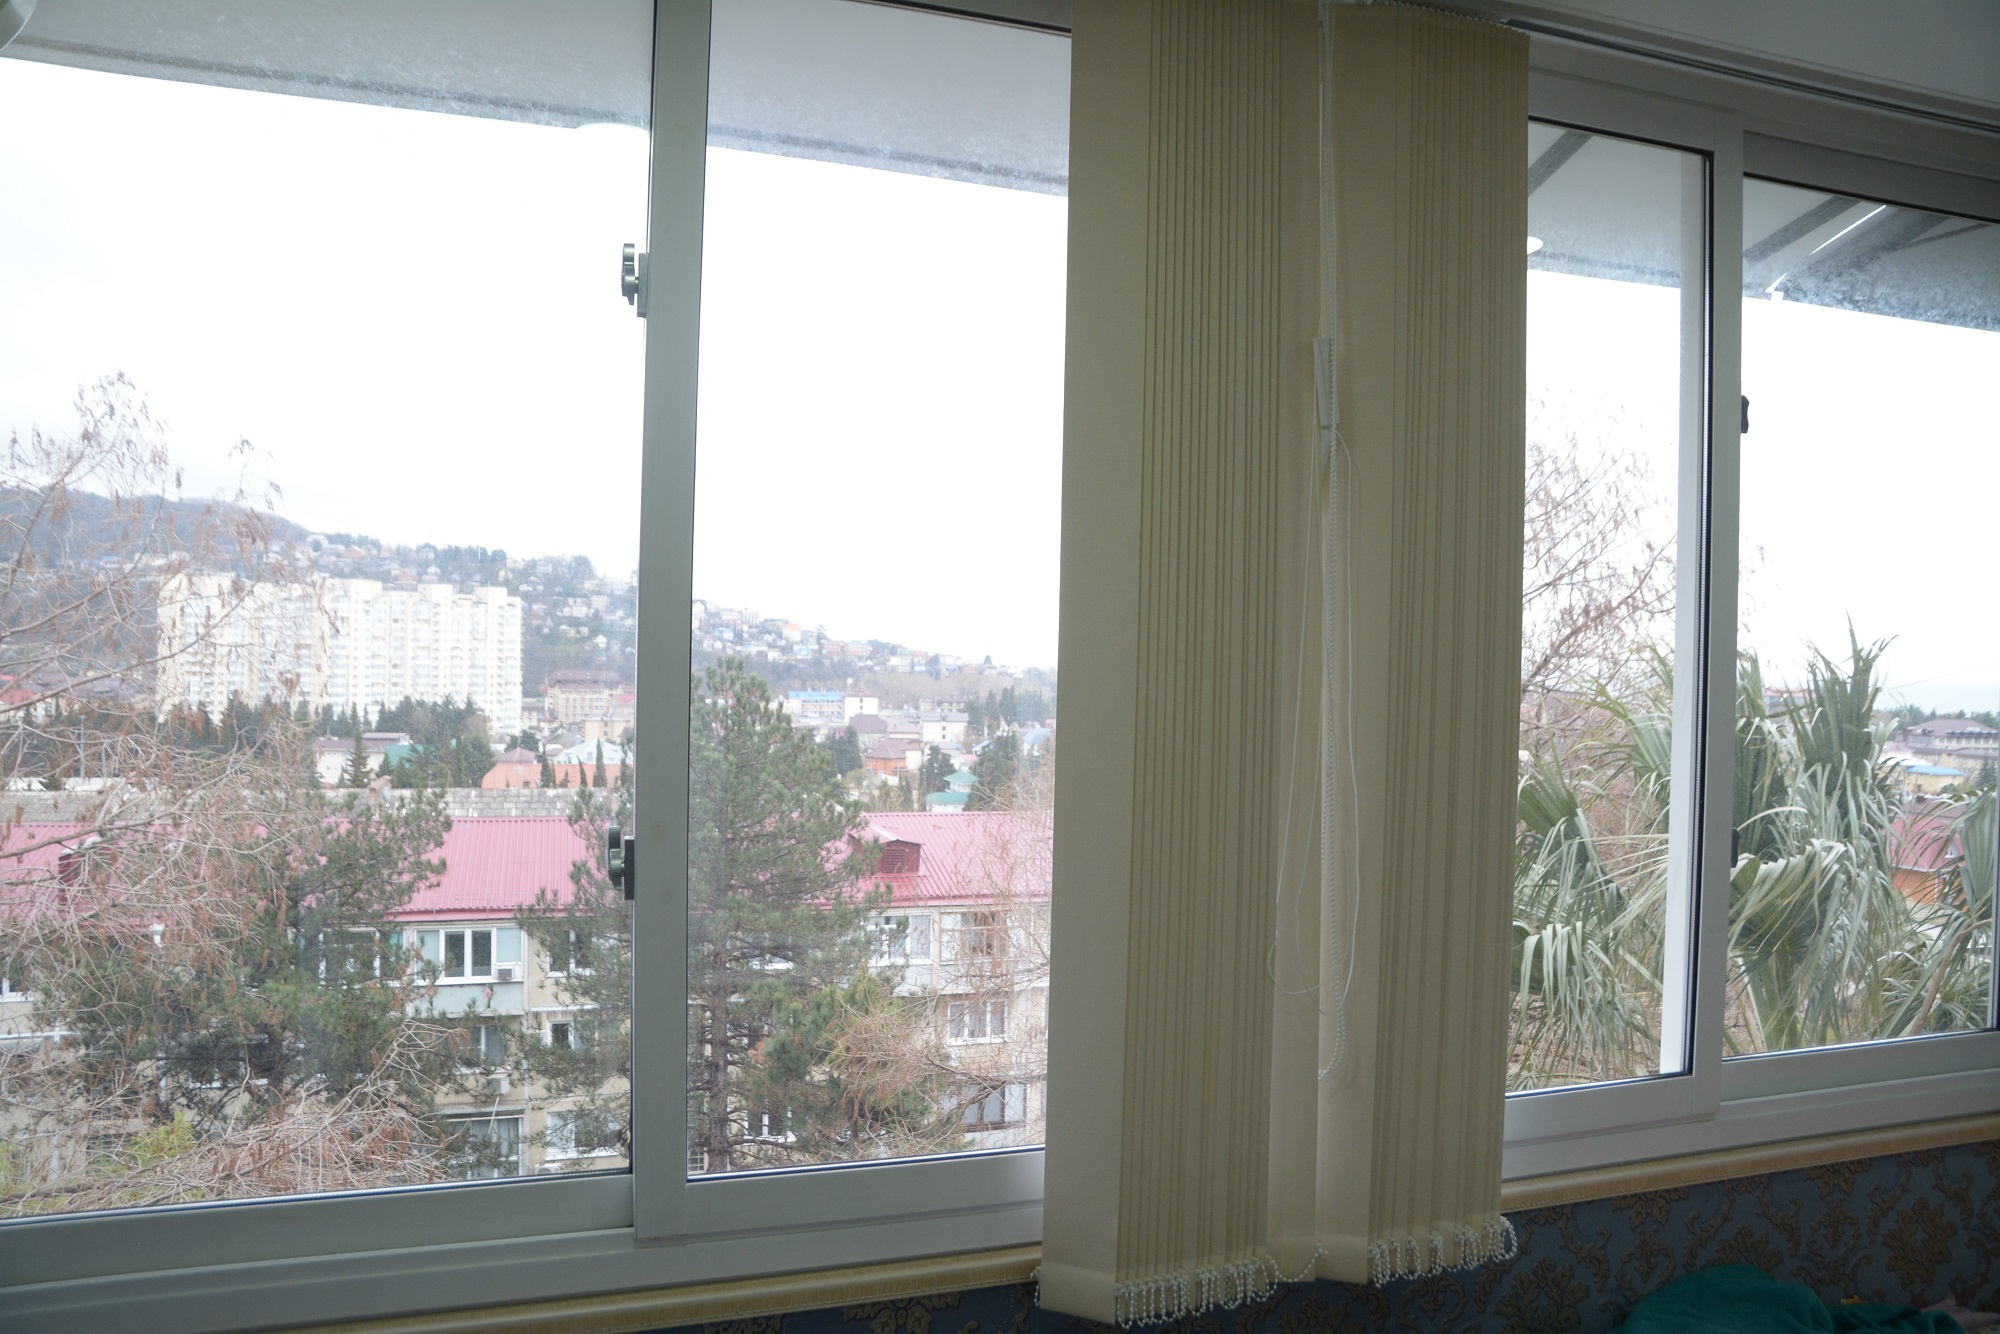 Квартира в многоквартирном доме 2-х комнт апартаменты в п Лазаревское